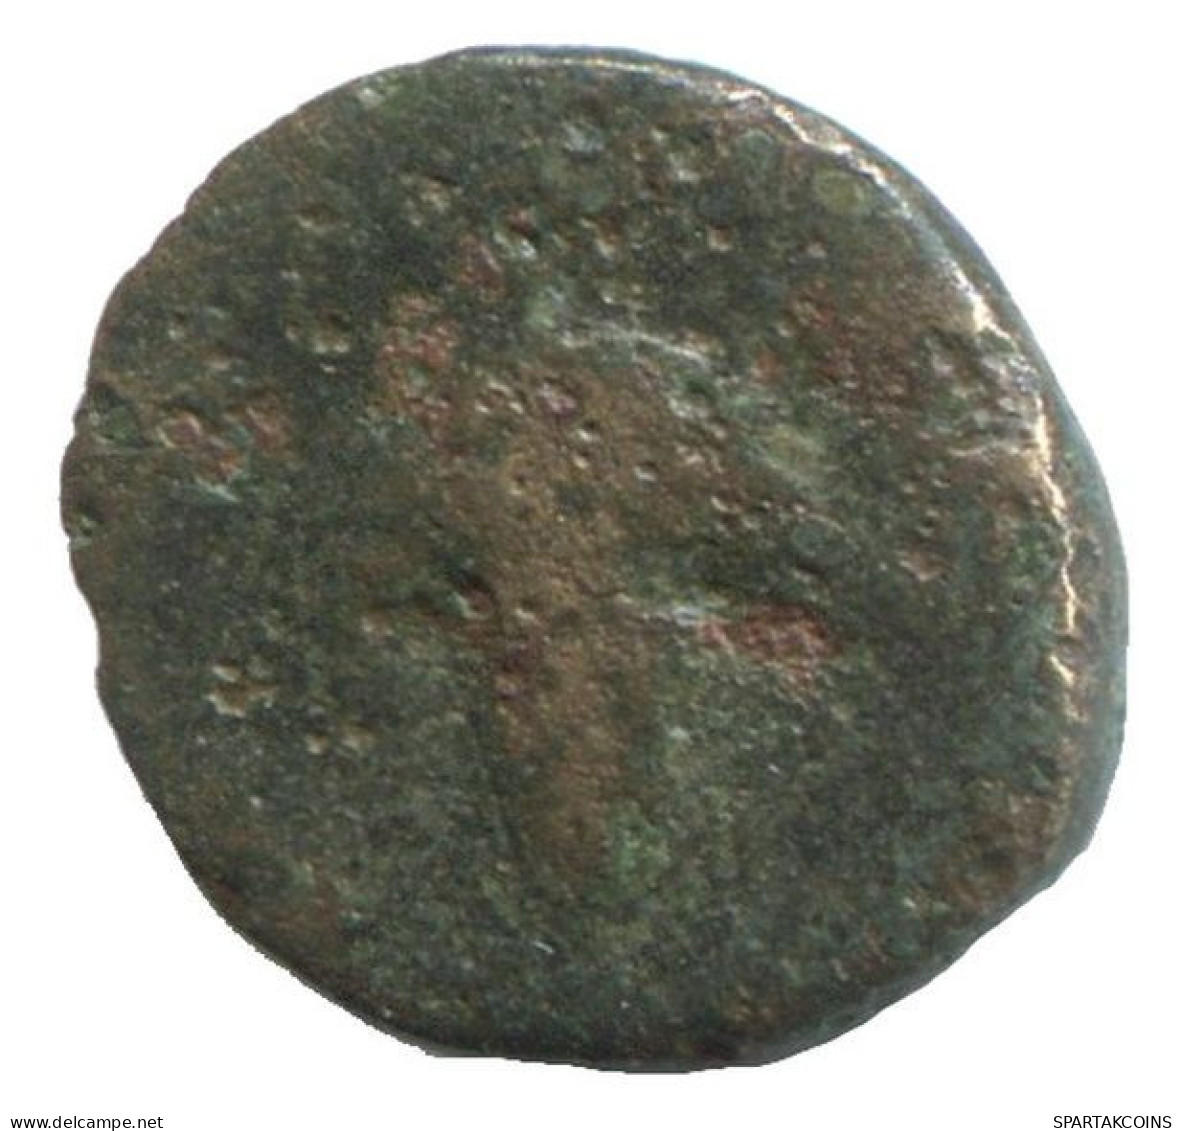 GRAPE Authentic Original Ancient GREEK Coin 0.8g/11mm #NNN1214.9.U.A - Greche